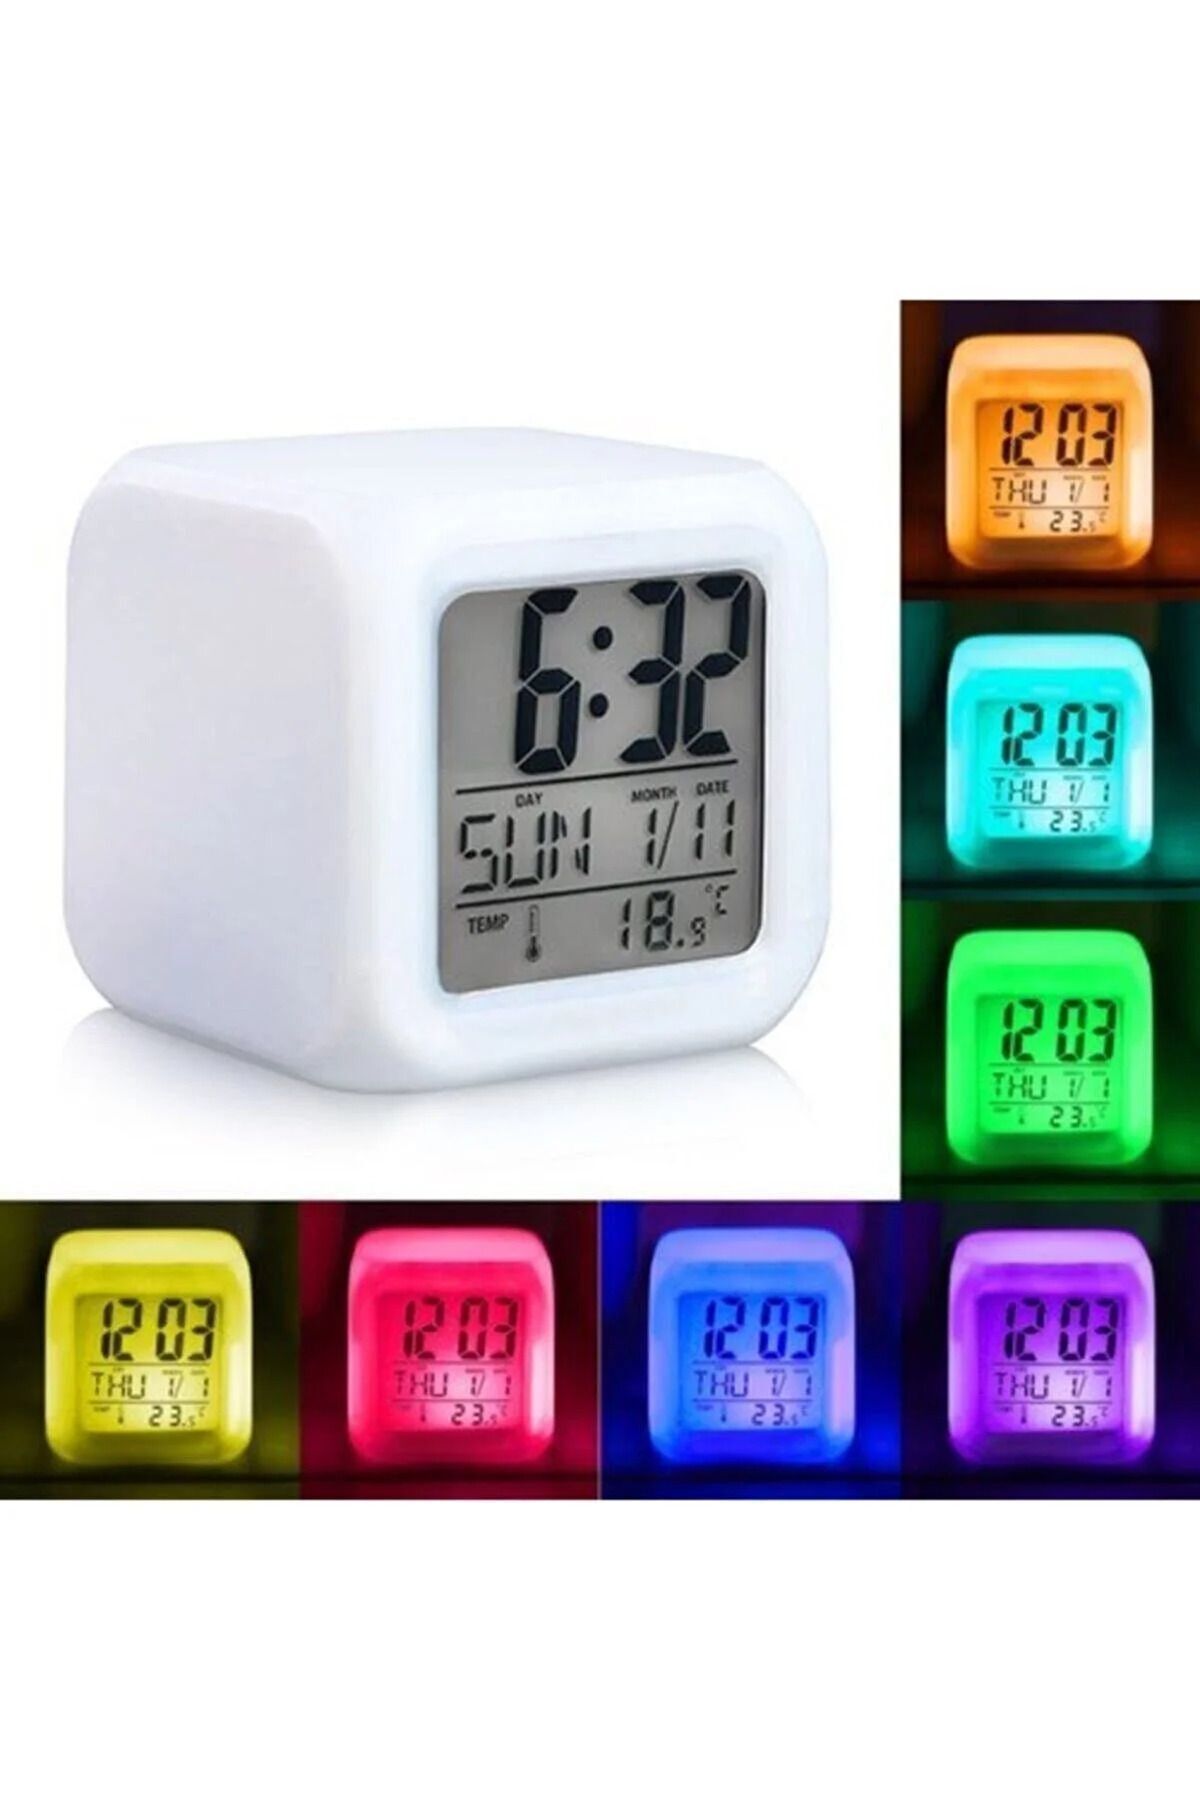 CNGZSHOP Ev Ofis Masa Saati 7 Renk Değiştiren Dijital Küp Alarmlı Çalar Saat Gece Lambası Takvim Sensörlü